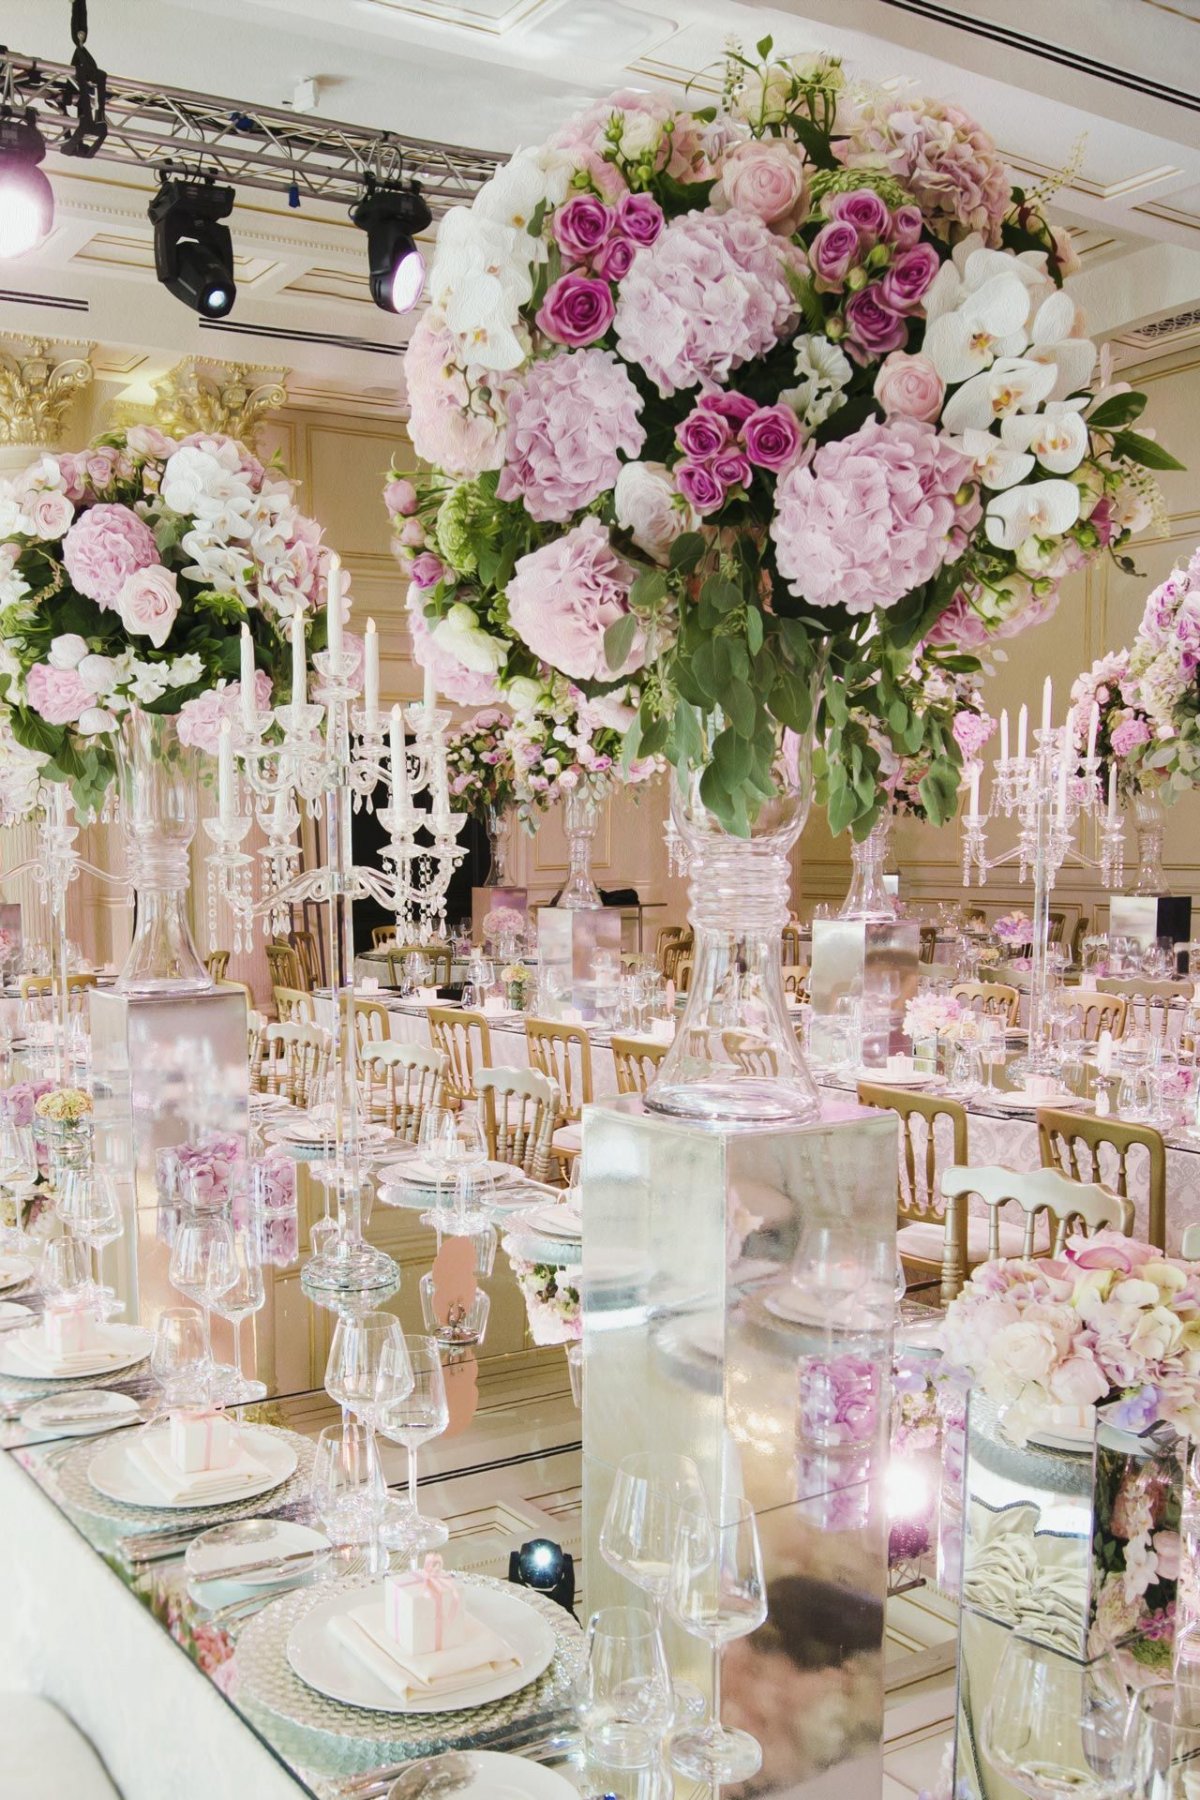 Студия декора Юлии Шакировой, цветочная свадьба, фото 16